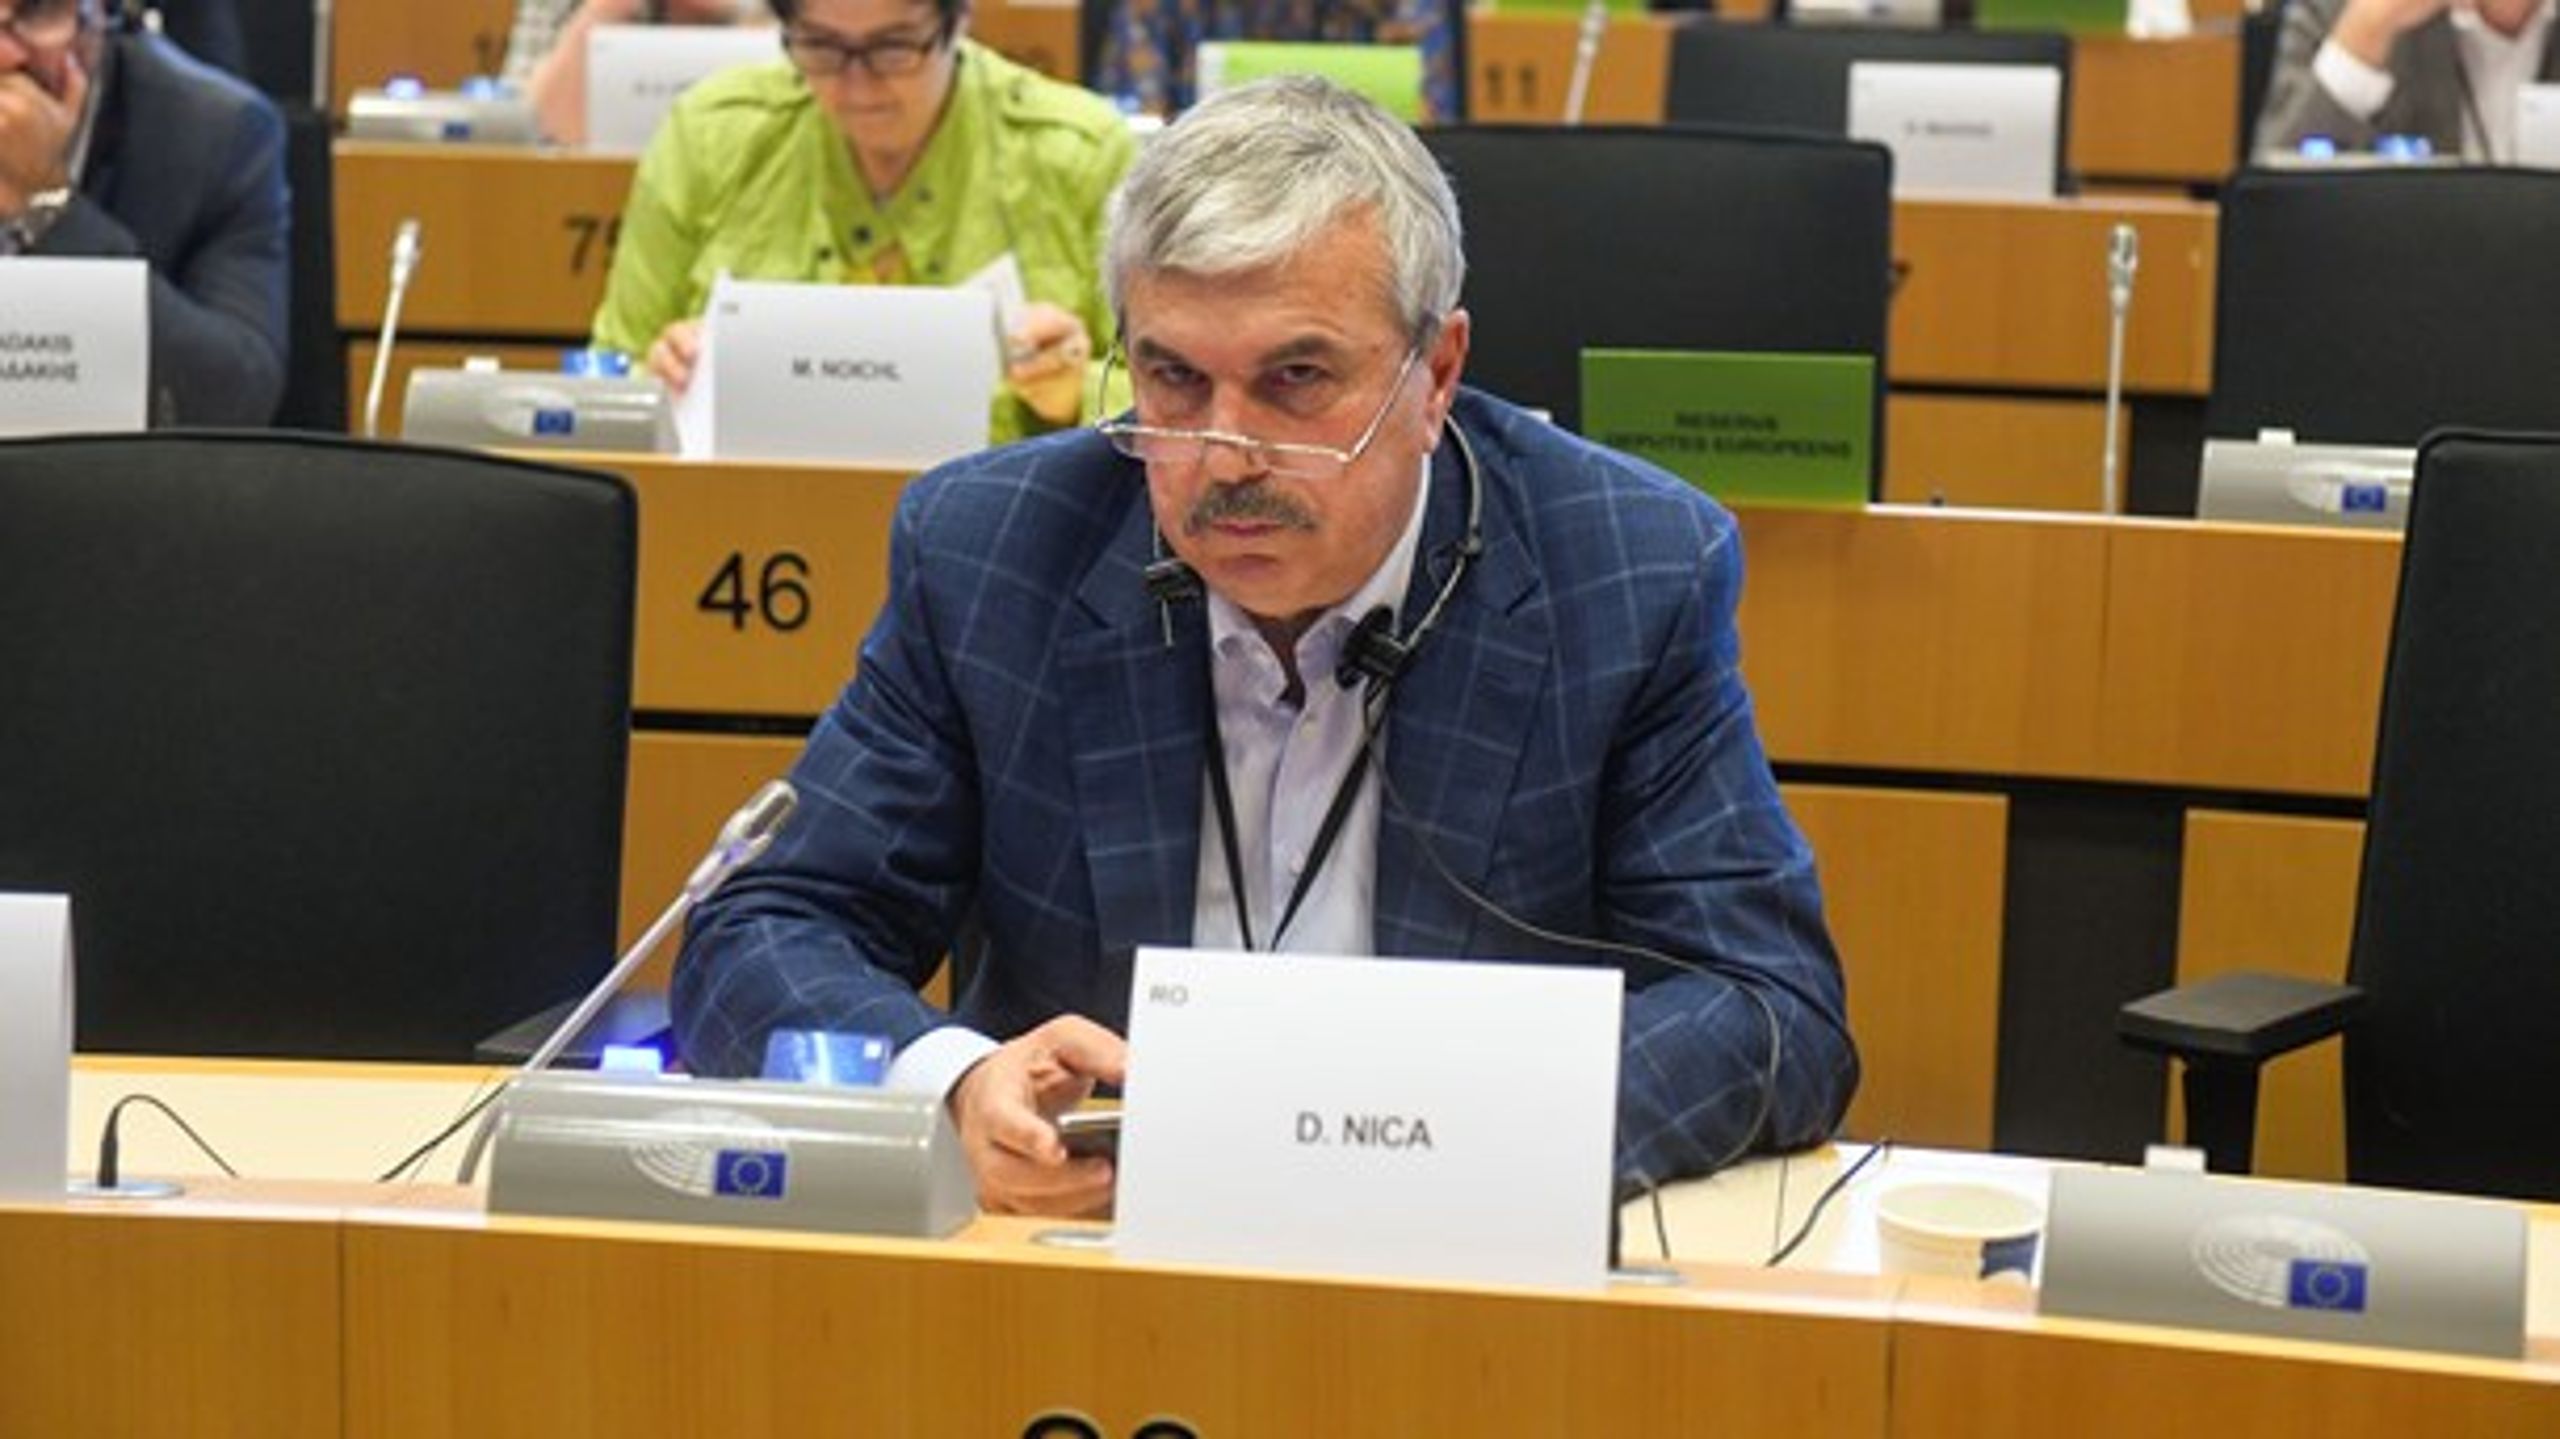 Dan Nica er det ene af Rumæniens to bud på en kommende transportkommissær.